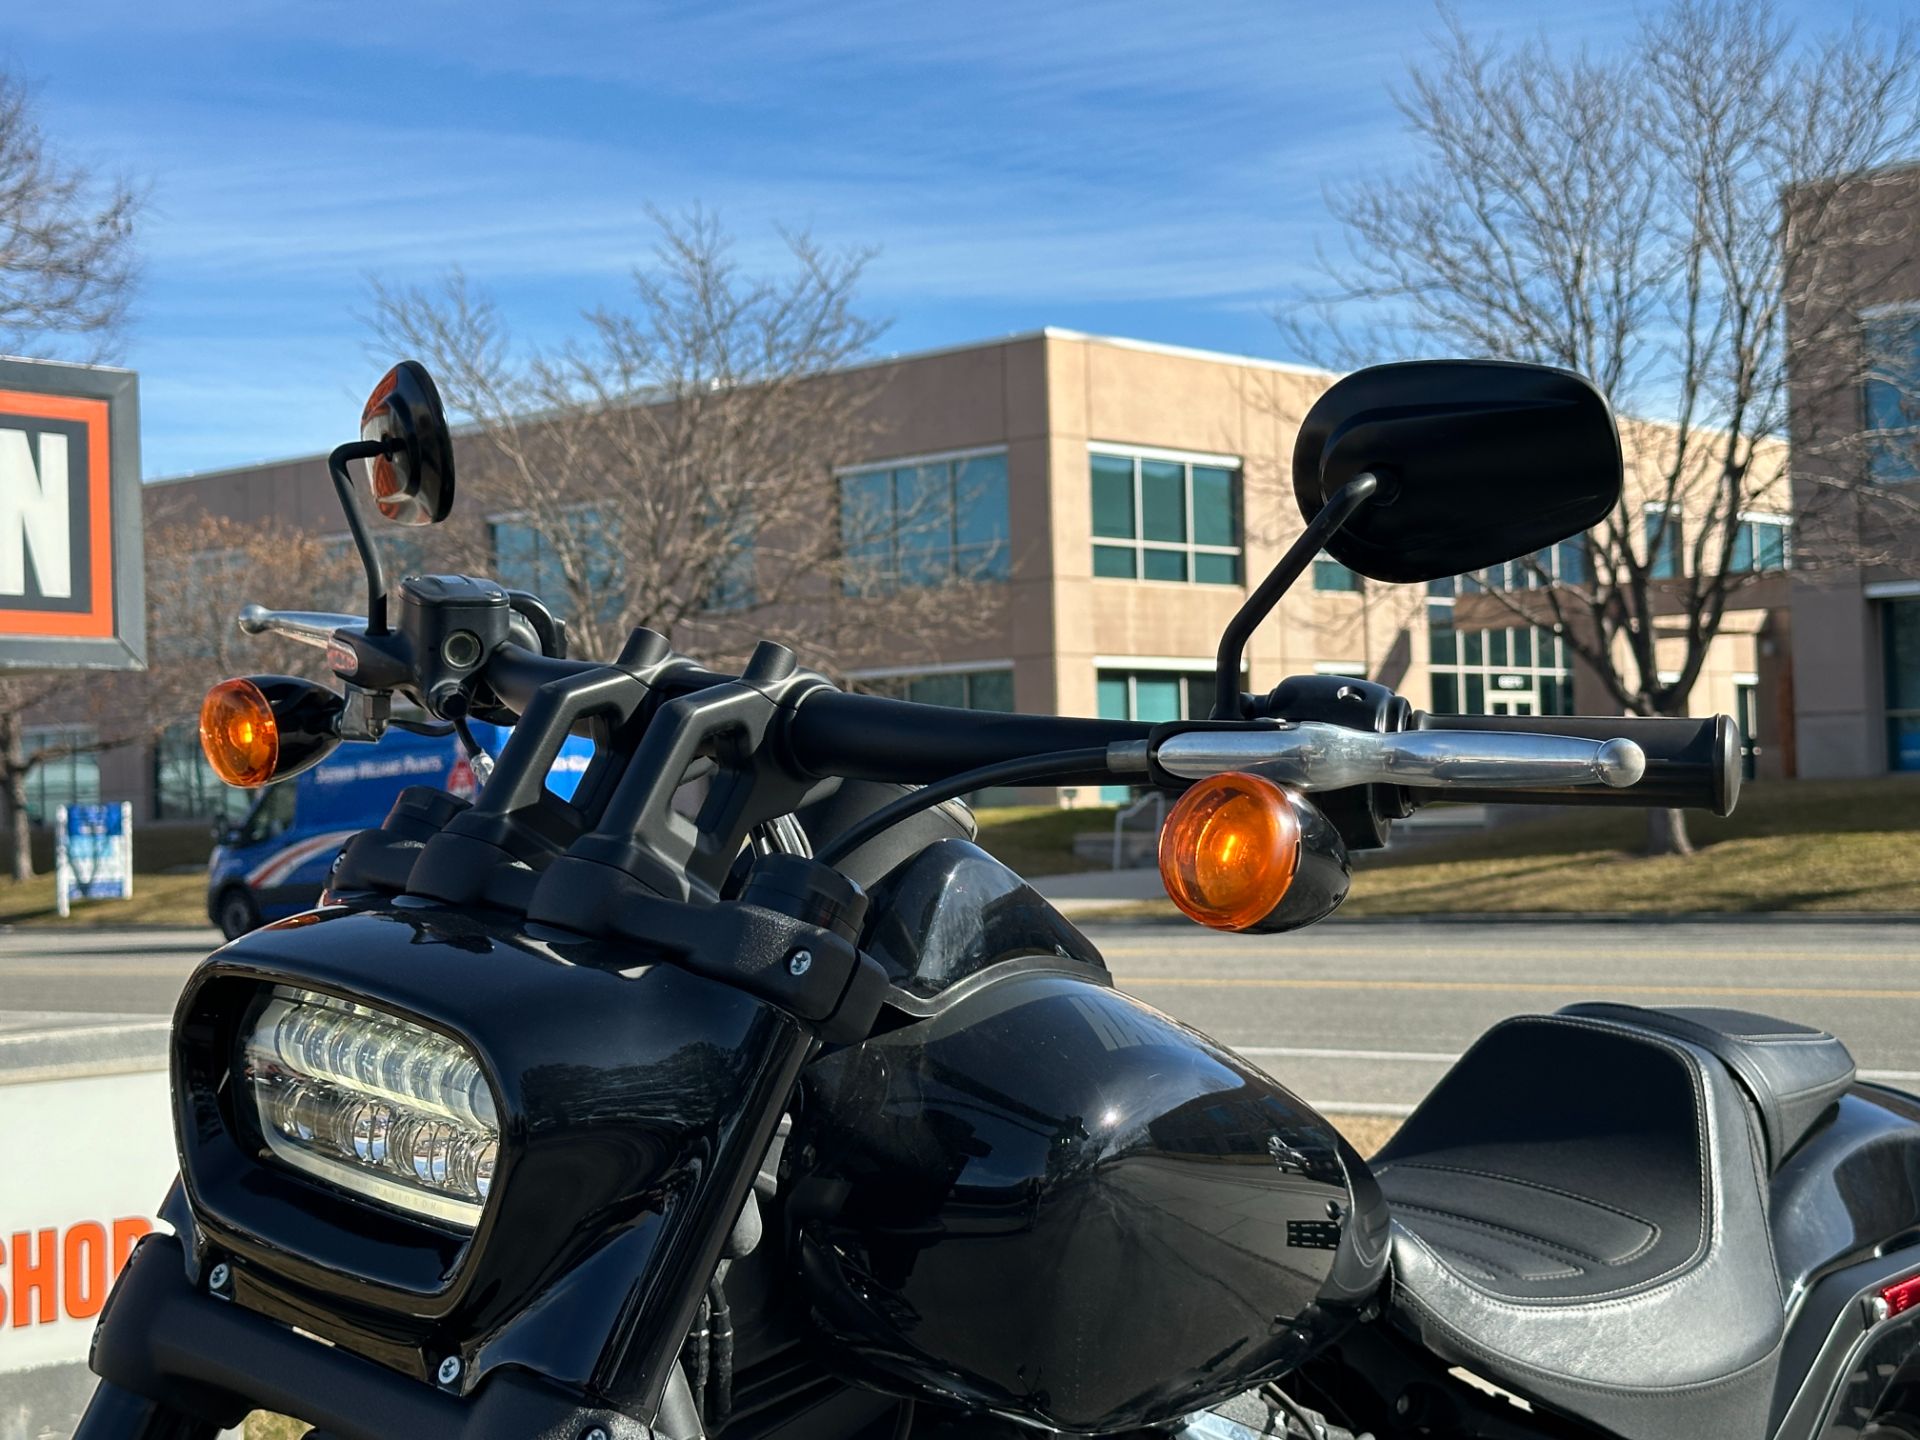 2018 Harley-Davidson Fat Bob® 107 in Sandy, Utah - Photo 9